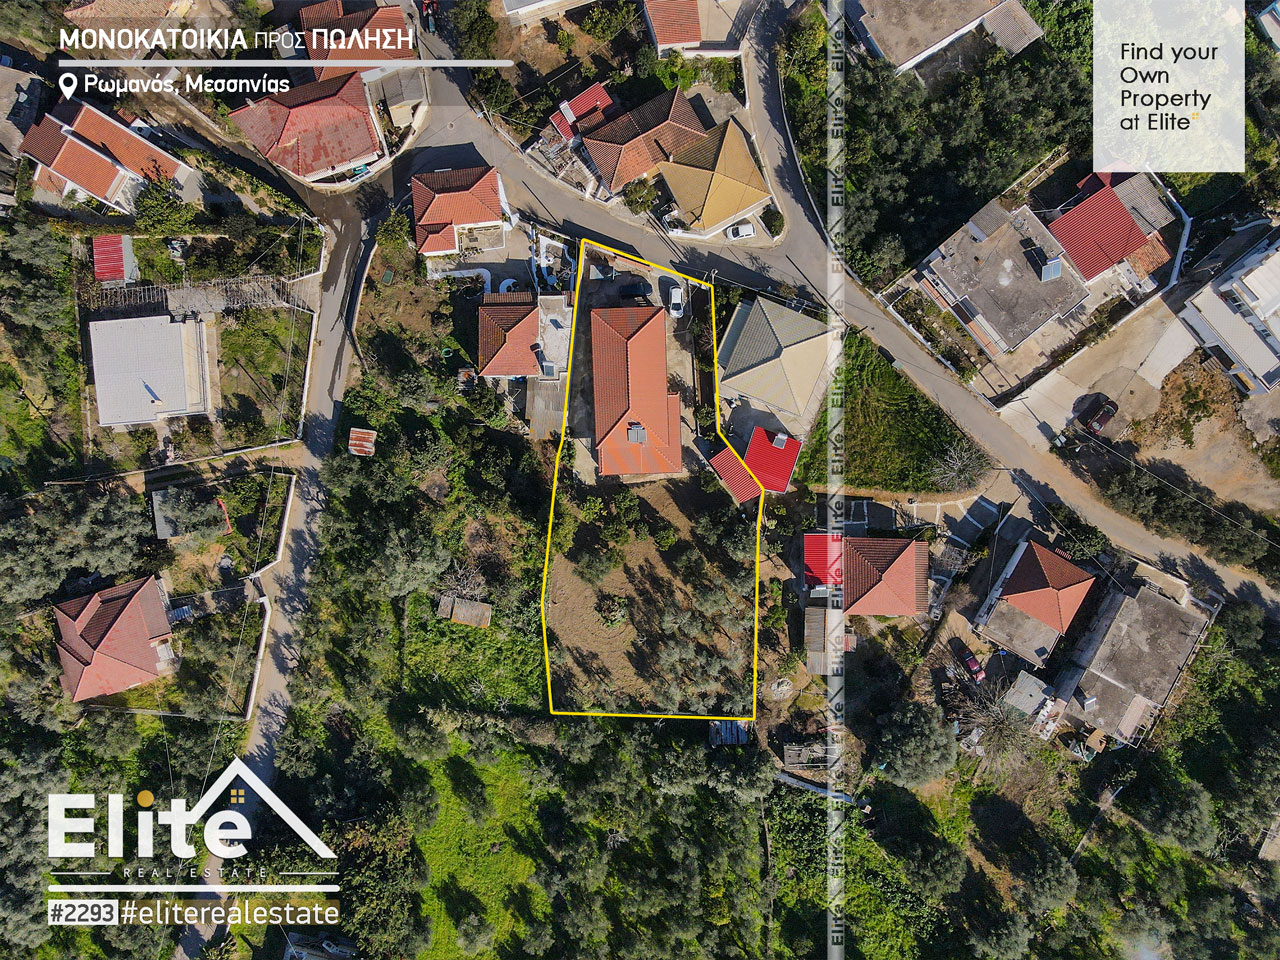 Venta, casa unifamiliar en Romanos Pylos Nestoros #2293 | ELITE REAL ESTATE